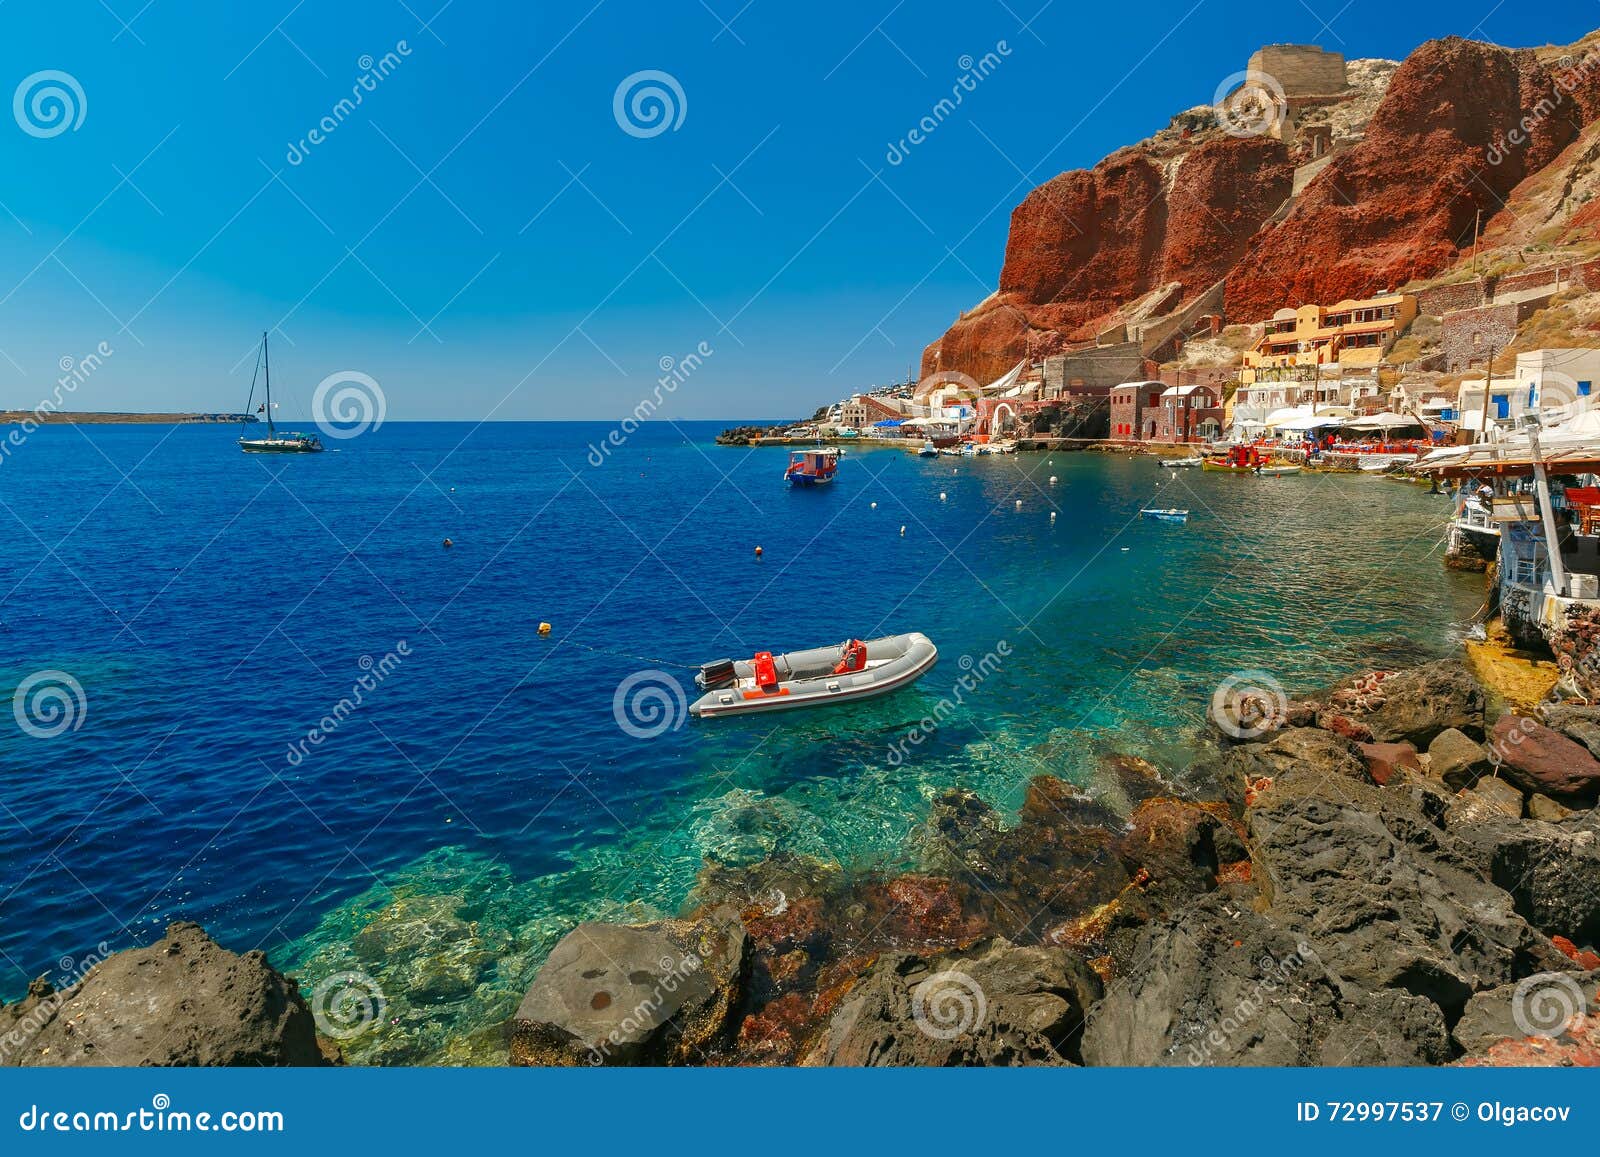 Port Amoudi Of Oia Or Ia, Santorini, Greece Stock Photo ...